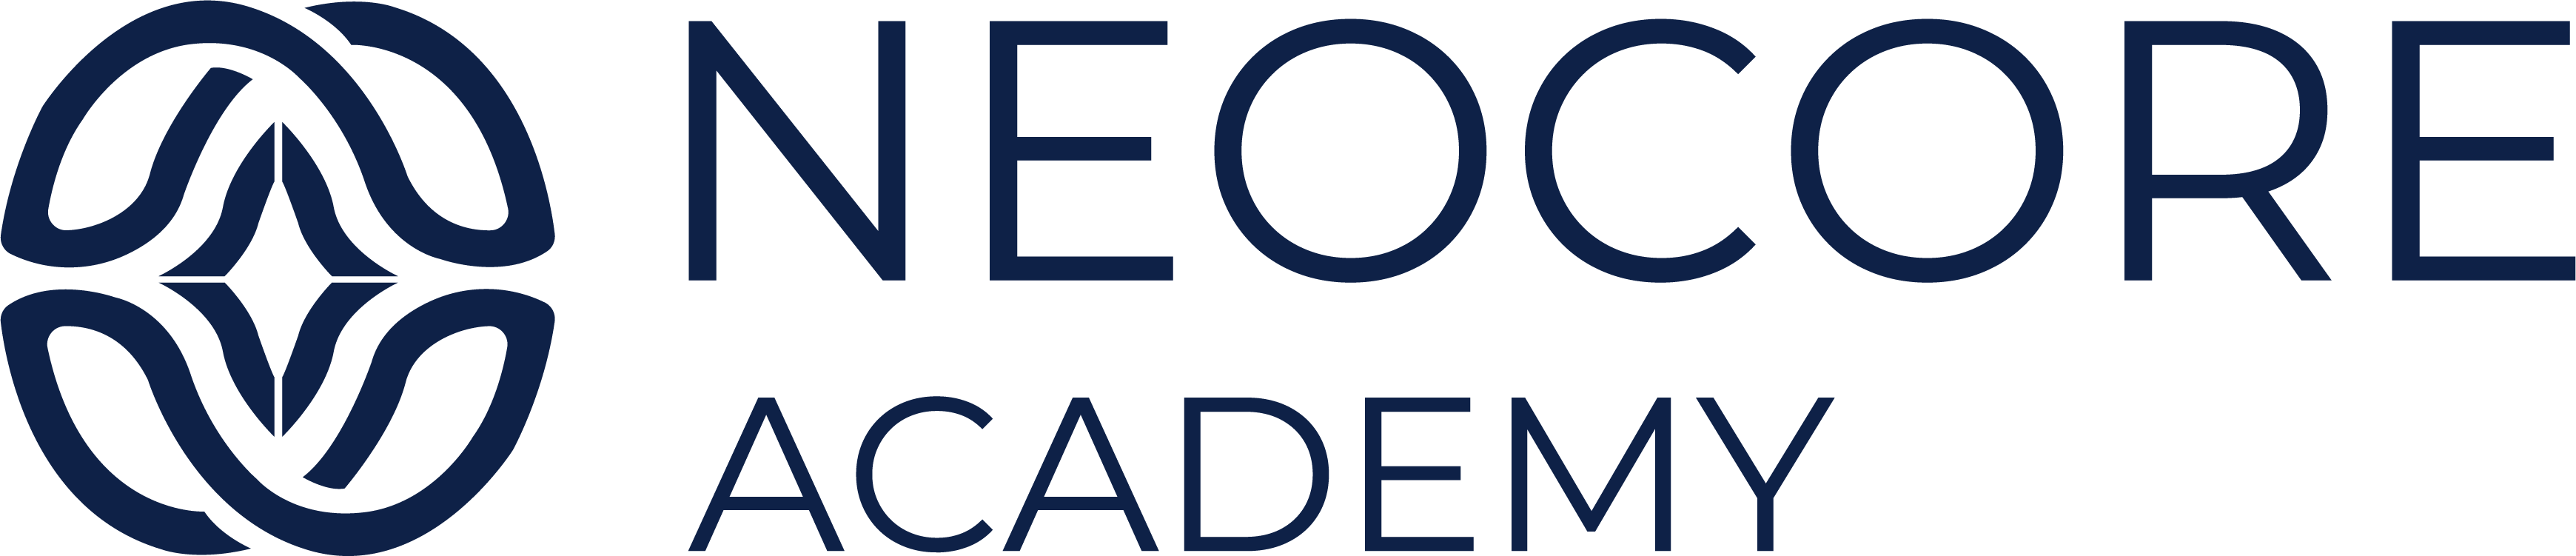 Neocore Academy